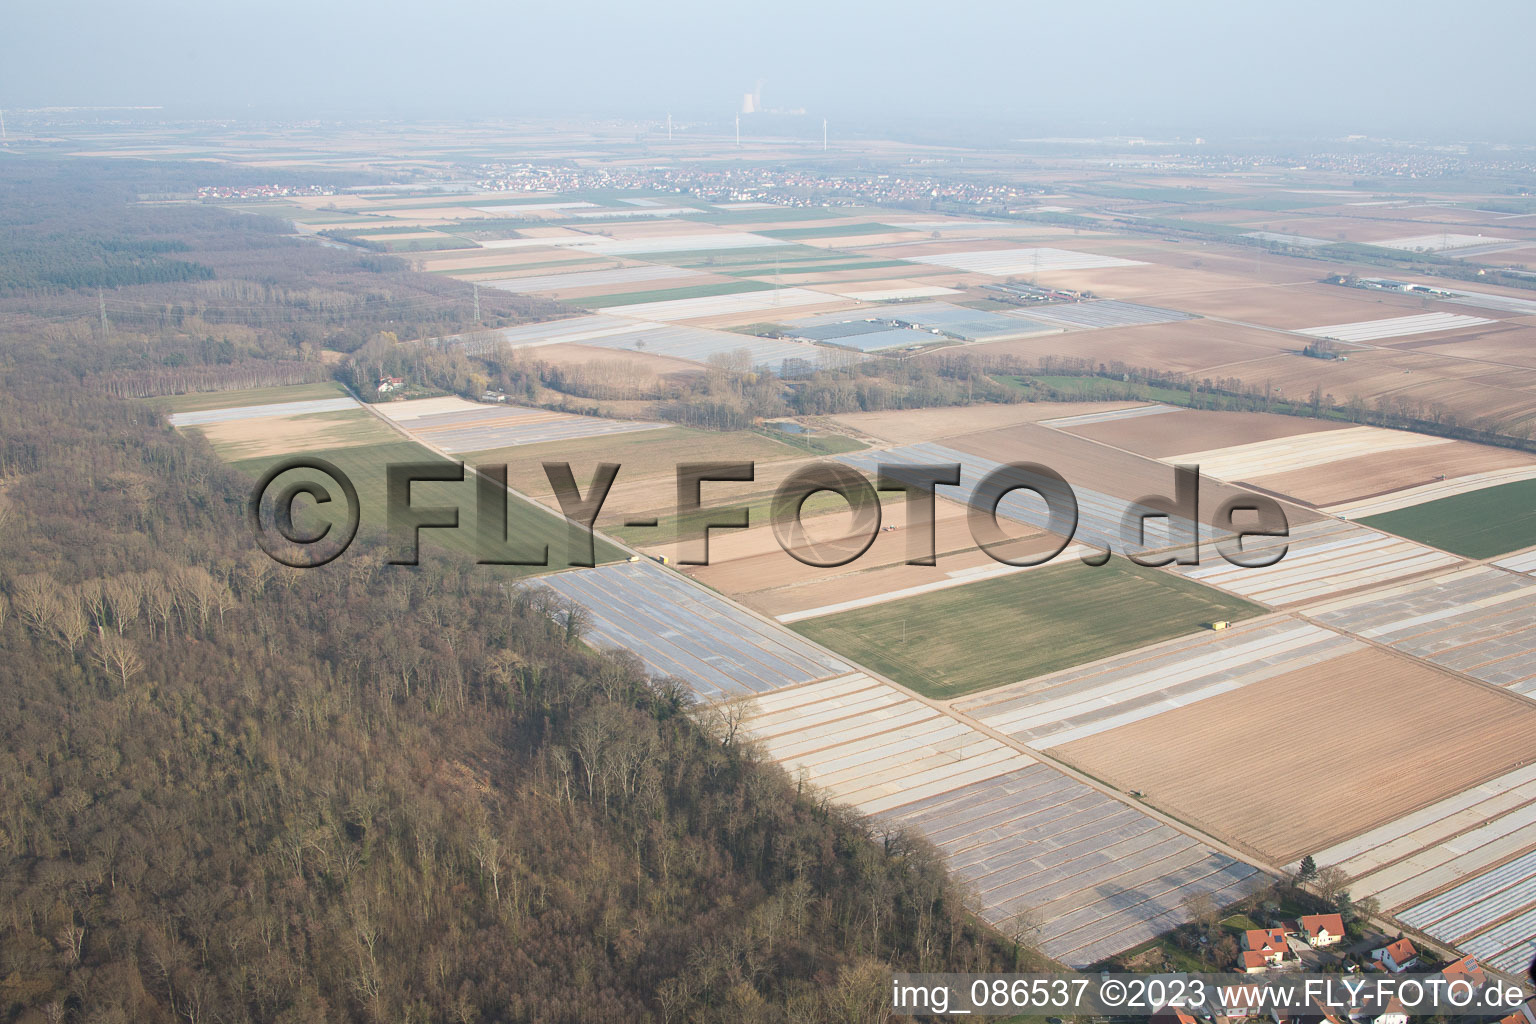 Vue aérienne de Freisbach dans le département Rhénanie-Palatinat, Allemagne